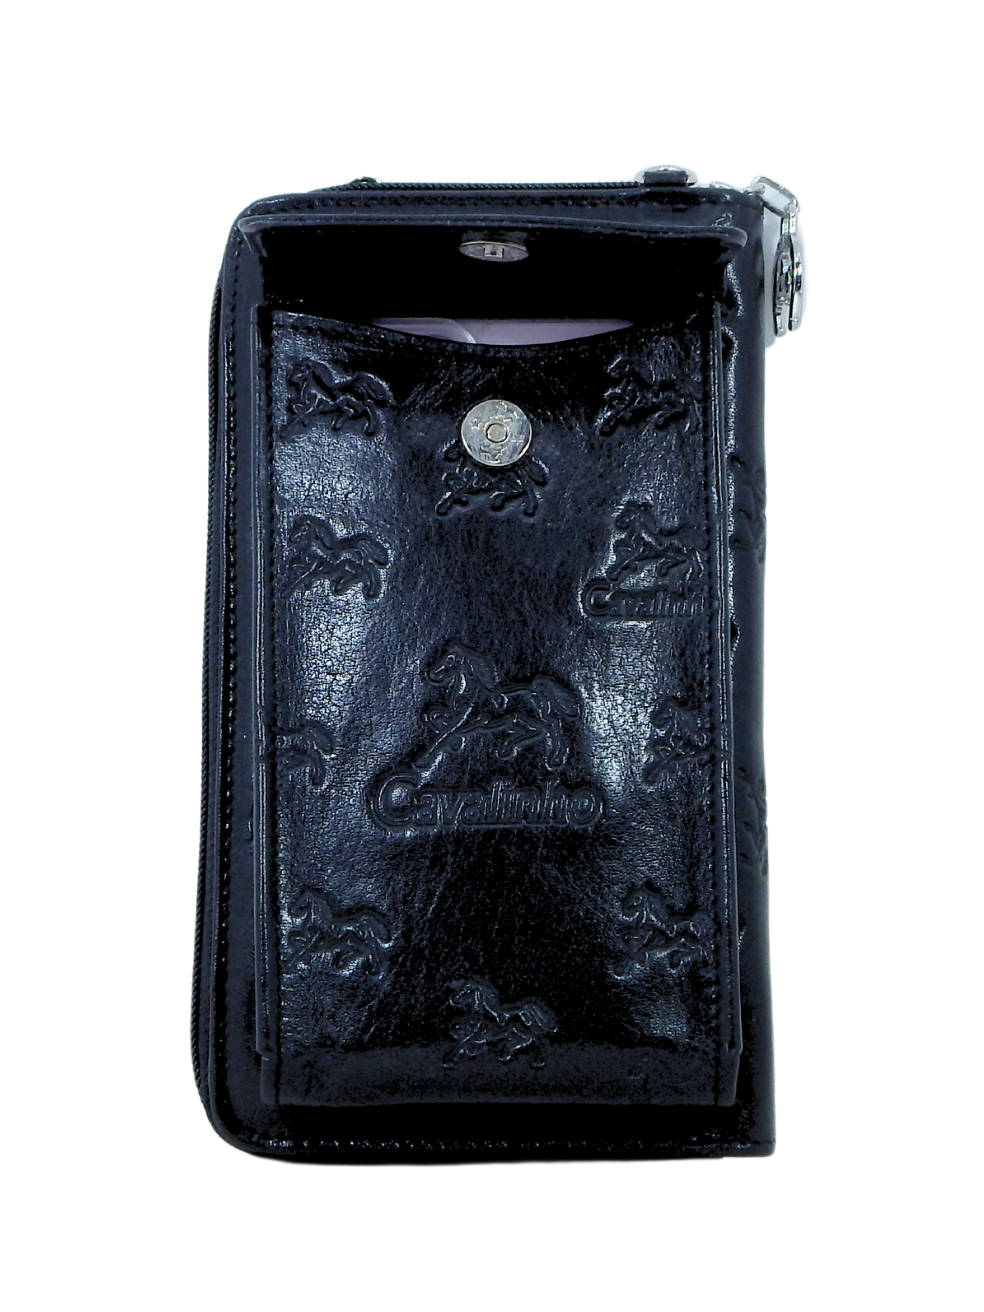 Cavalinho Cavalo Lusitano Phone Crossbody Bag & Wallet SKU 28090282.01 #color_black